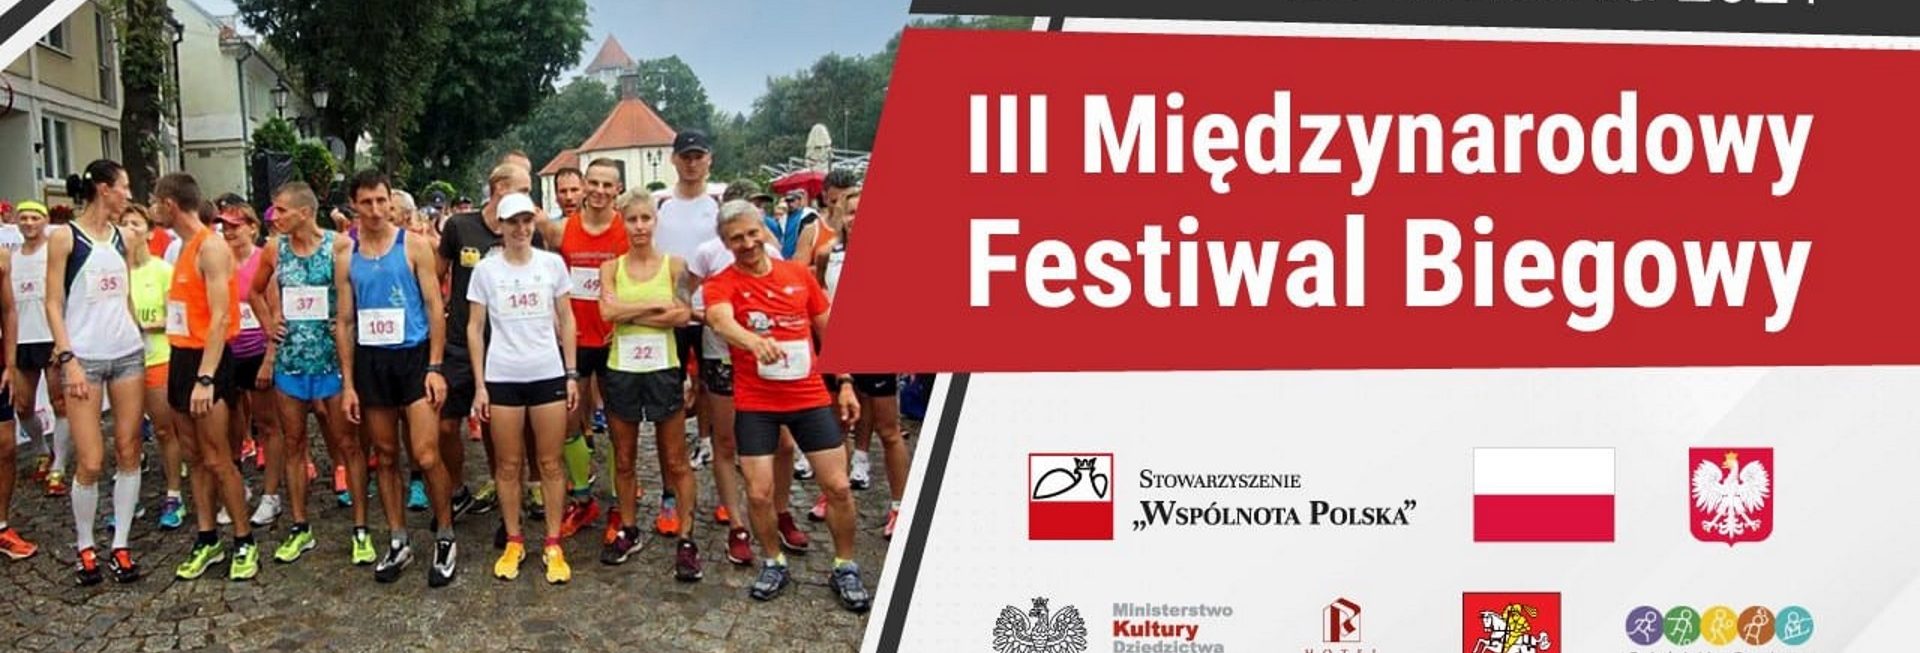 Plakat graficzny zapraszający do Ostródy na 3. edycję Międzynarodowego Polonijnego Festiwalu Biegowego - Ostróda 2021.